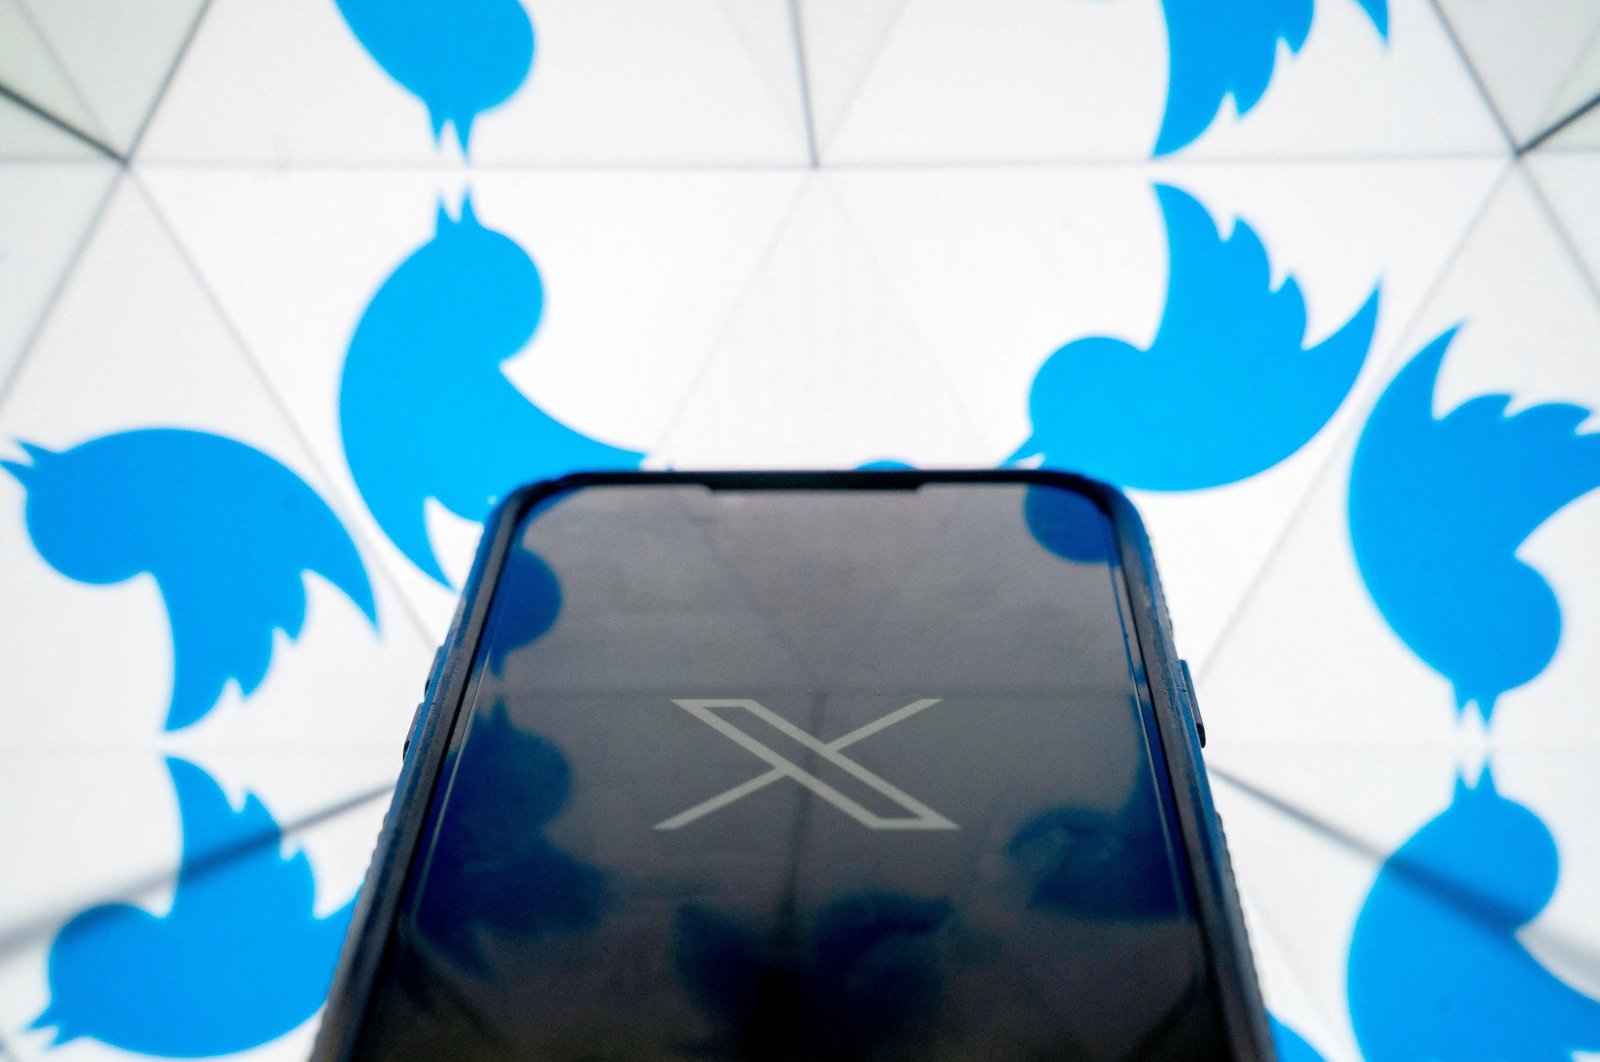 Masalah dengan X?  Ratusan perusahaan besar memiliki merek dagang untuk nama Twitter baru